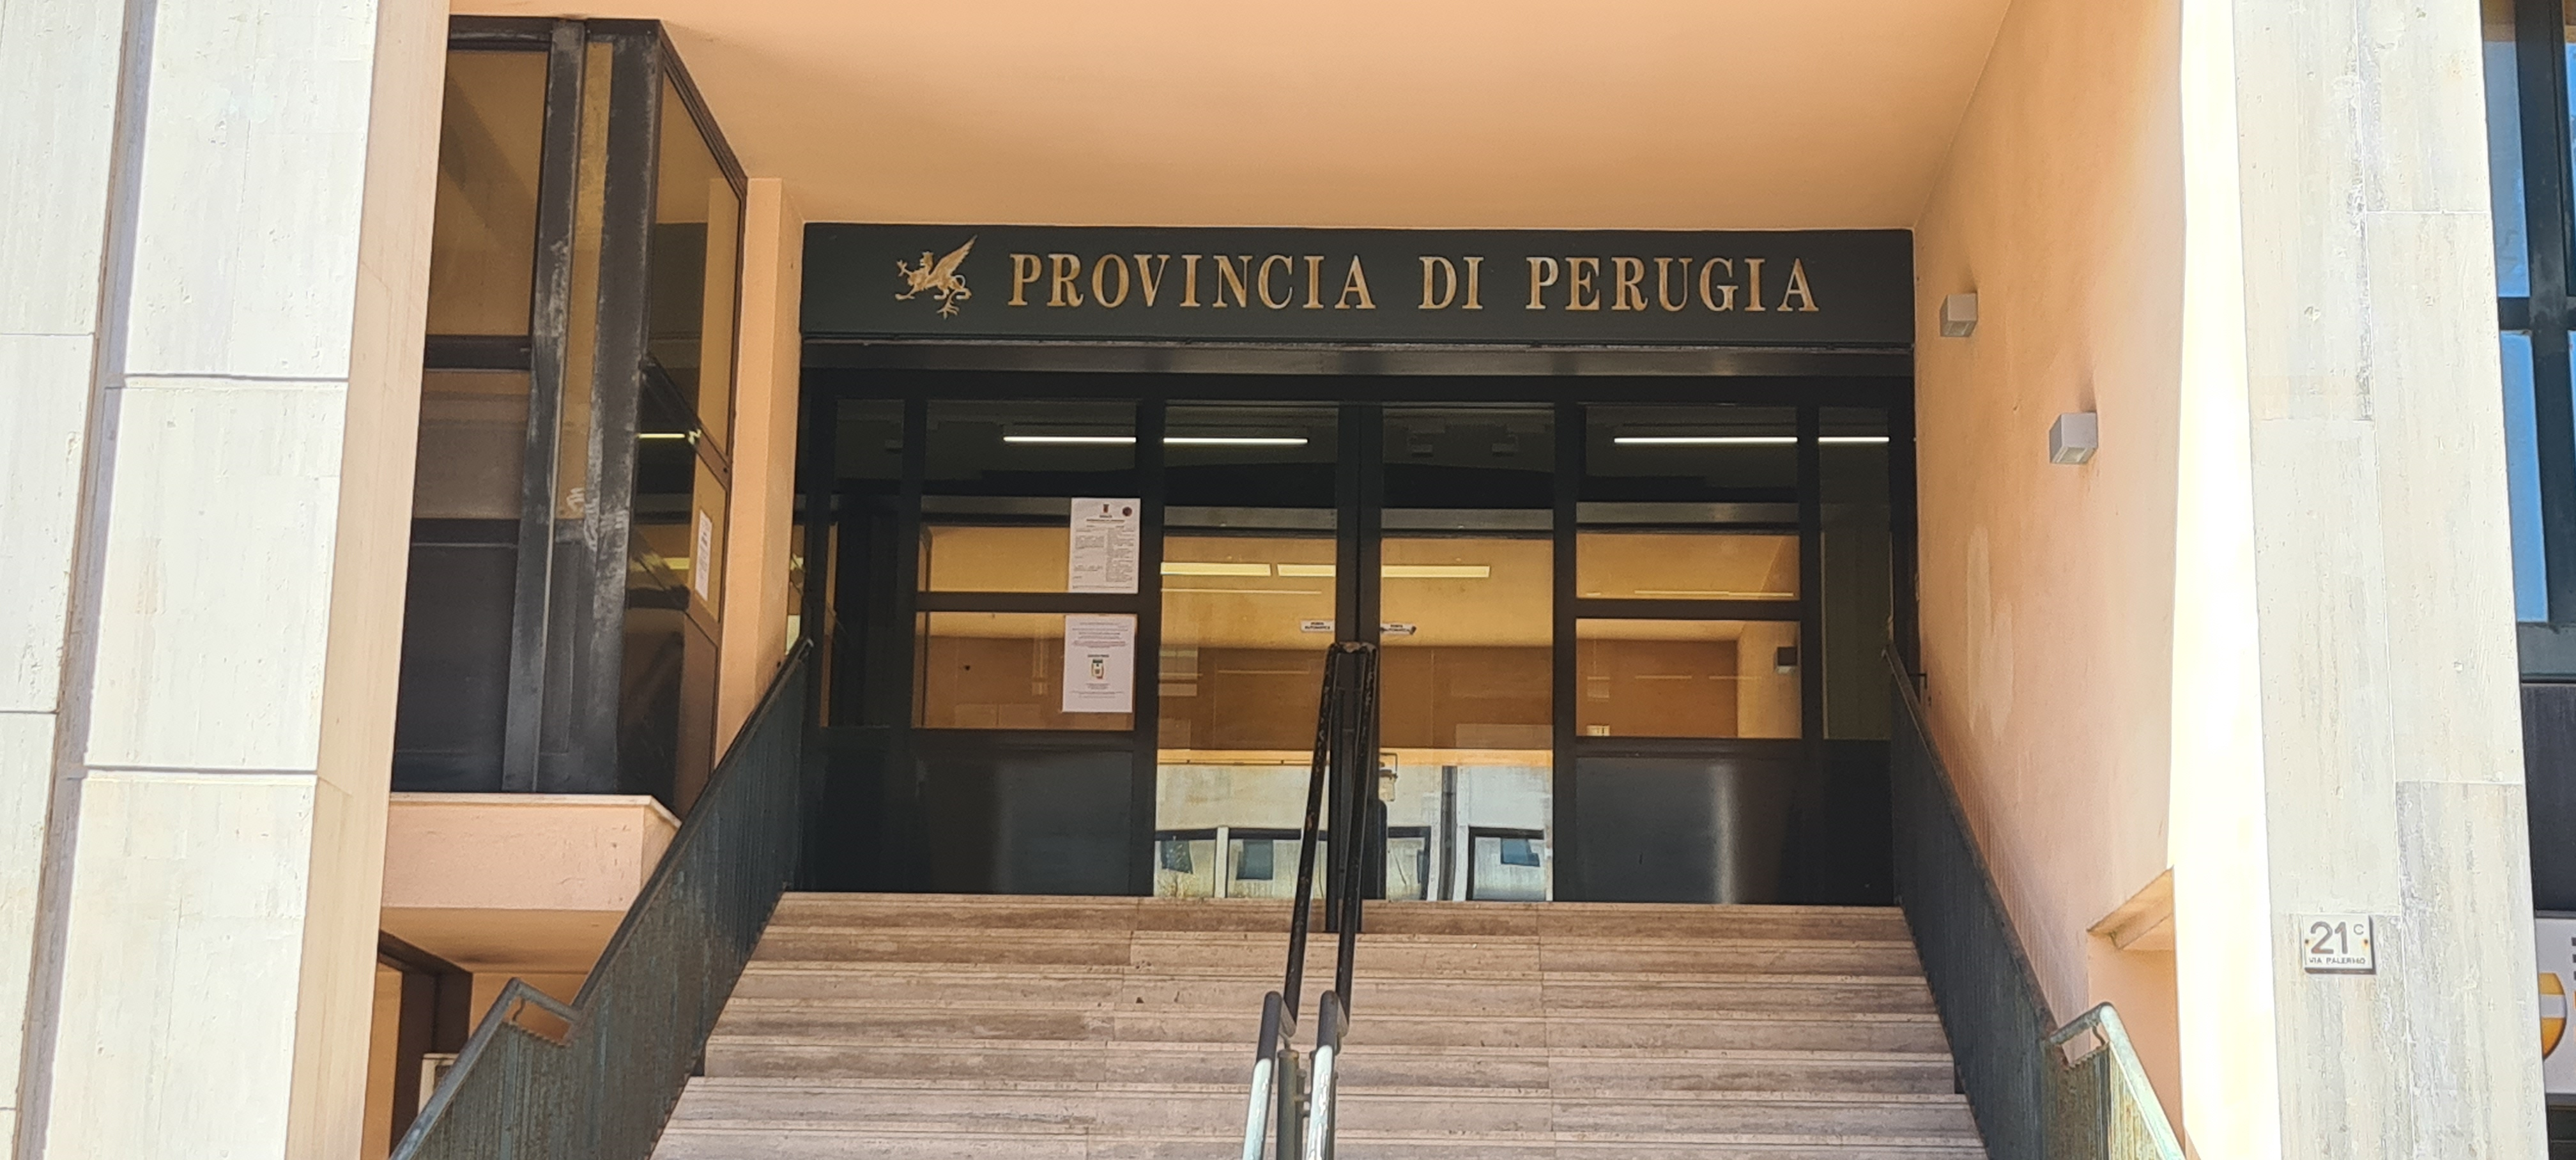 Edilizia scolastica – Avviso pubblico della Provincia di Perugia